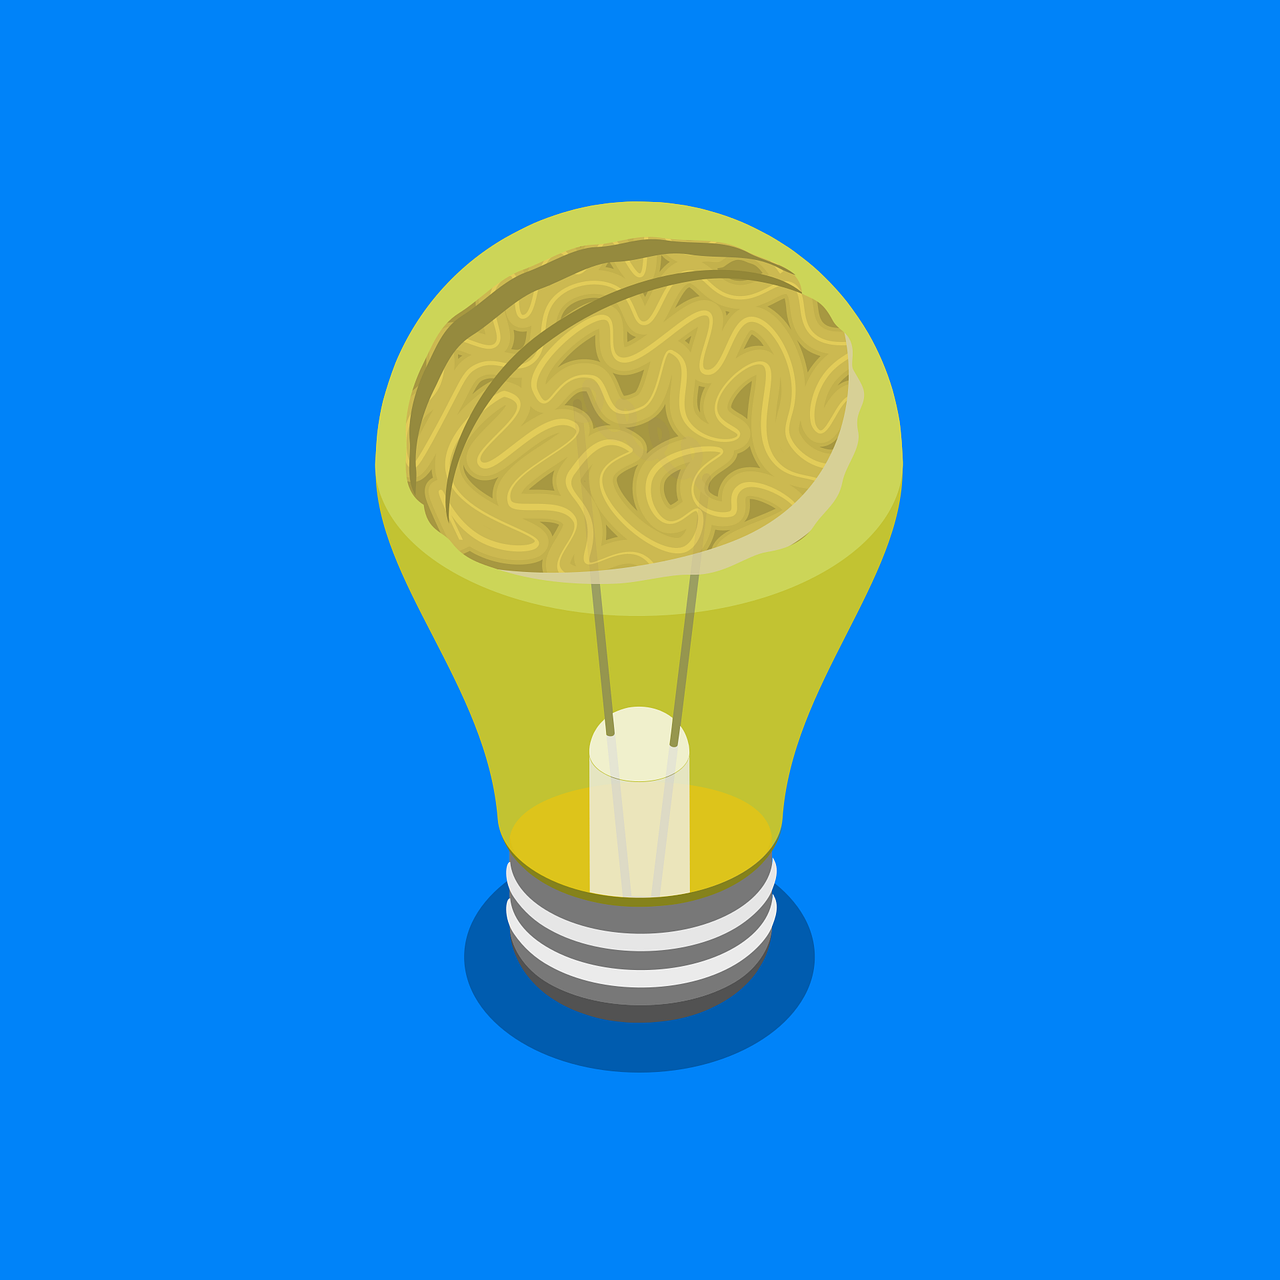 Brain inside a lightbulb